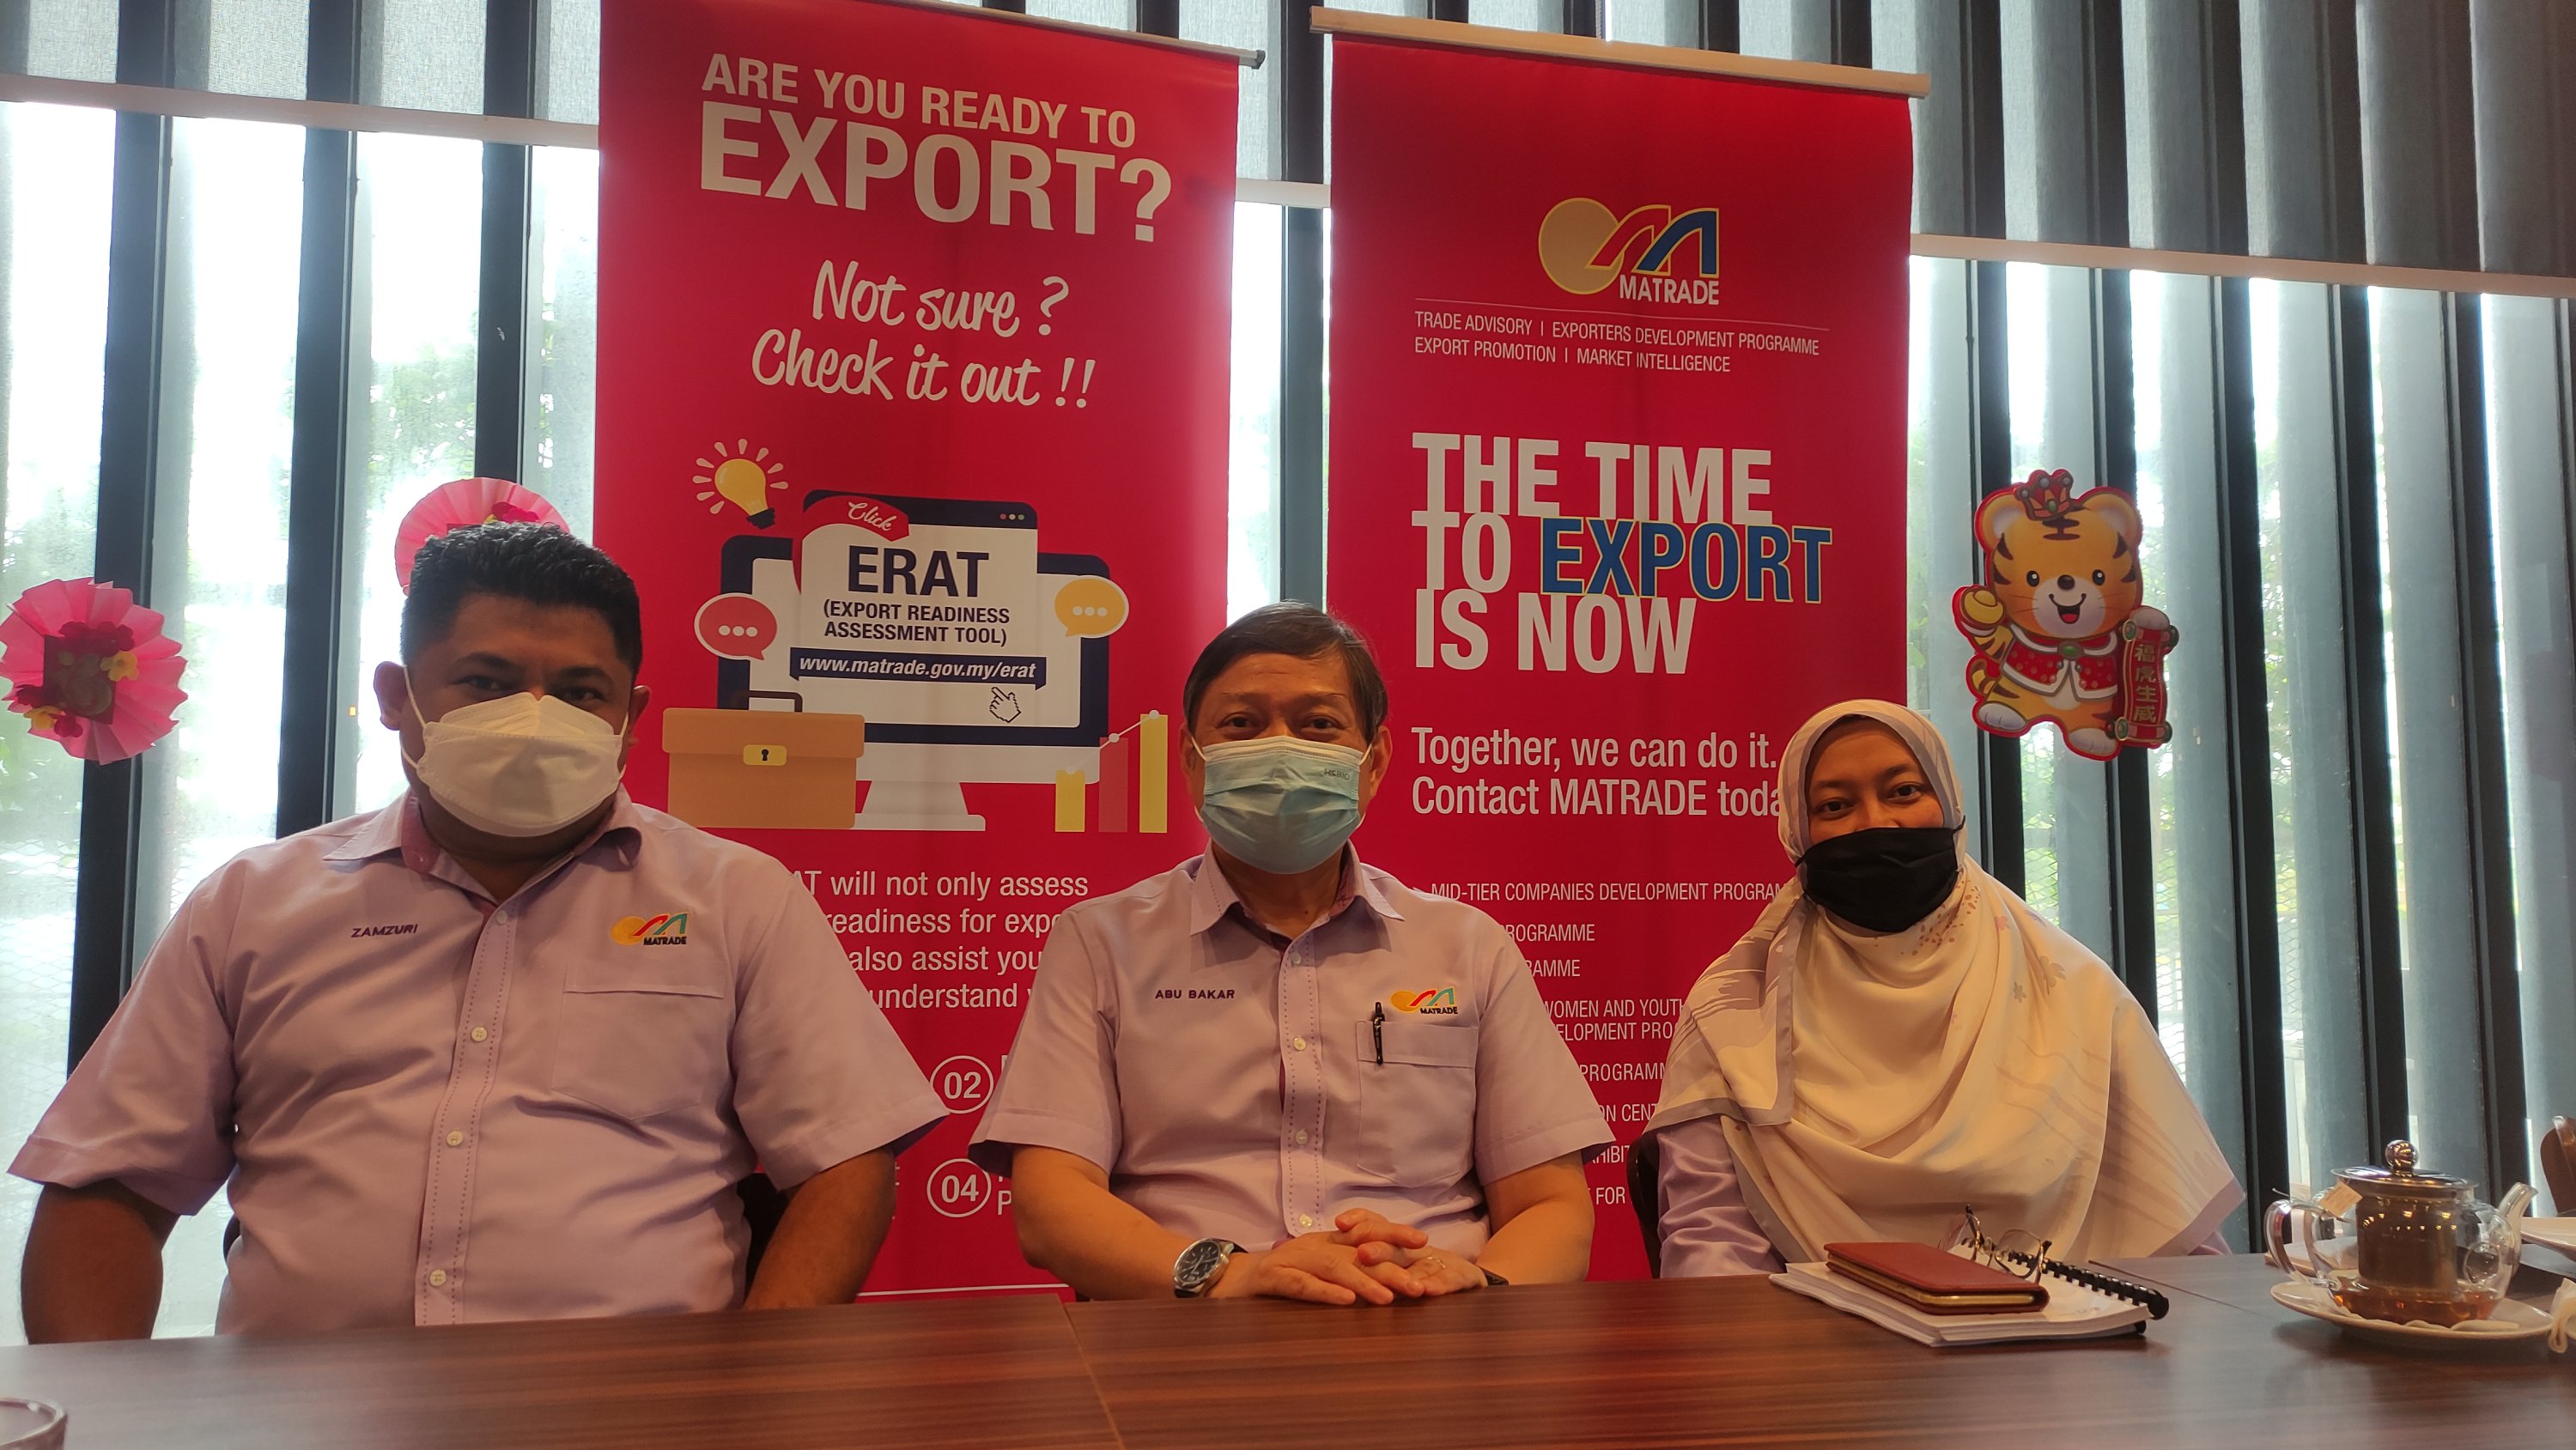 Matrade renforcera son soutien pour aider à la reprise commerciale du Sarawak